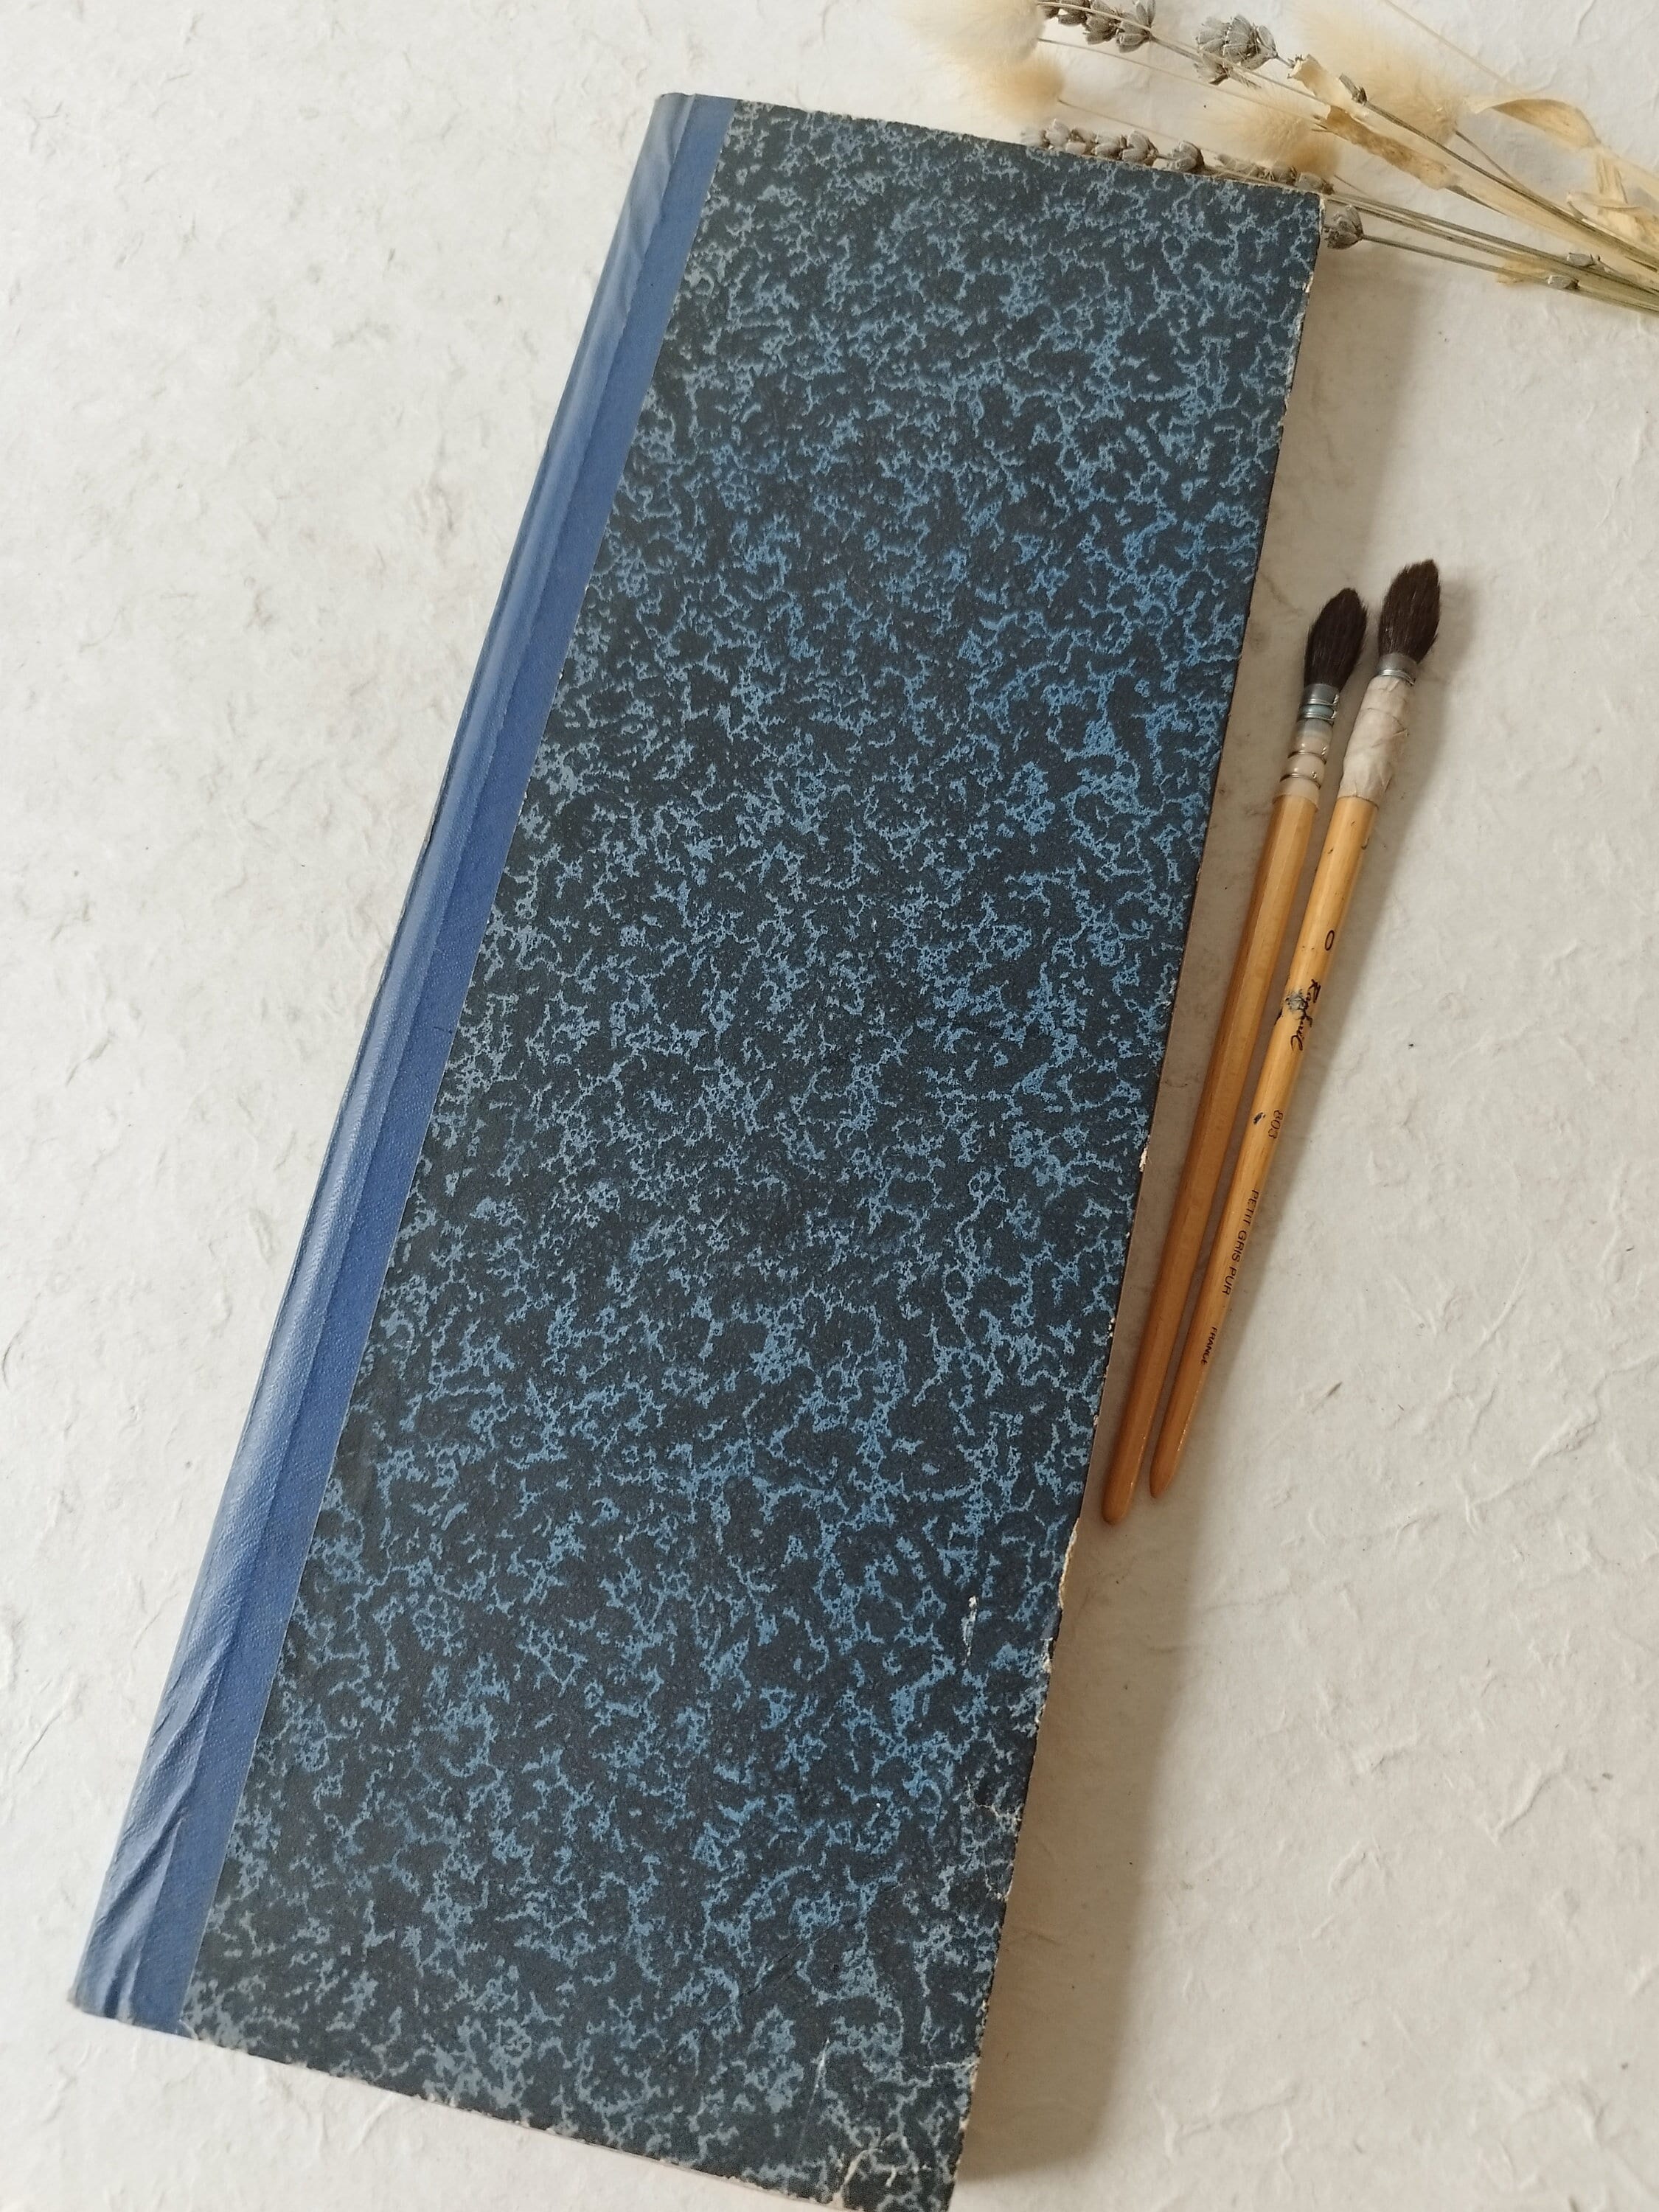 Kawaii Cartoon Notebook, Hand Account Book, Travel Planner